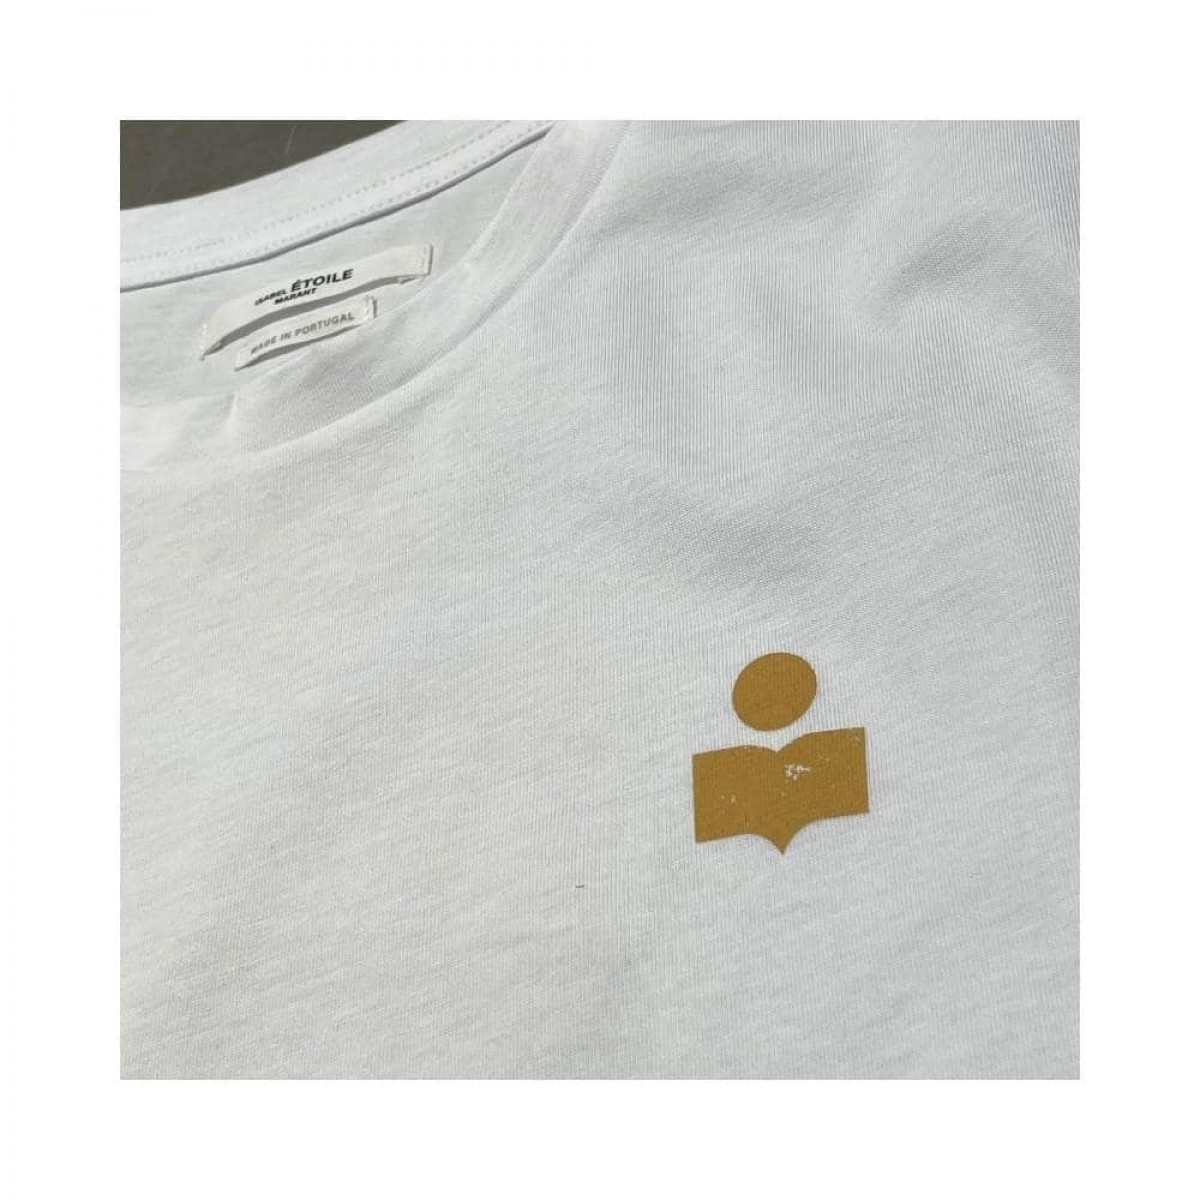 zewel t-shirt - white with ochre - logo på bryst